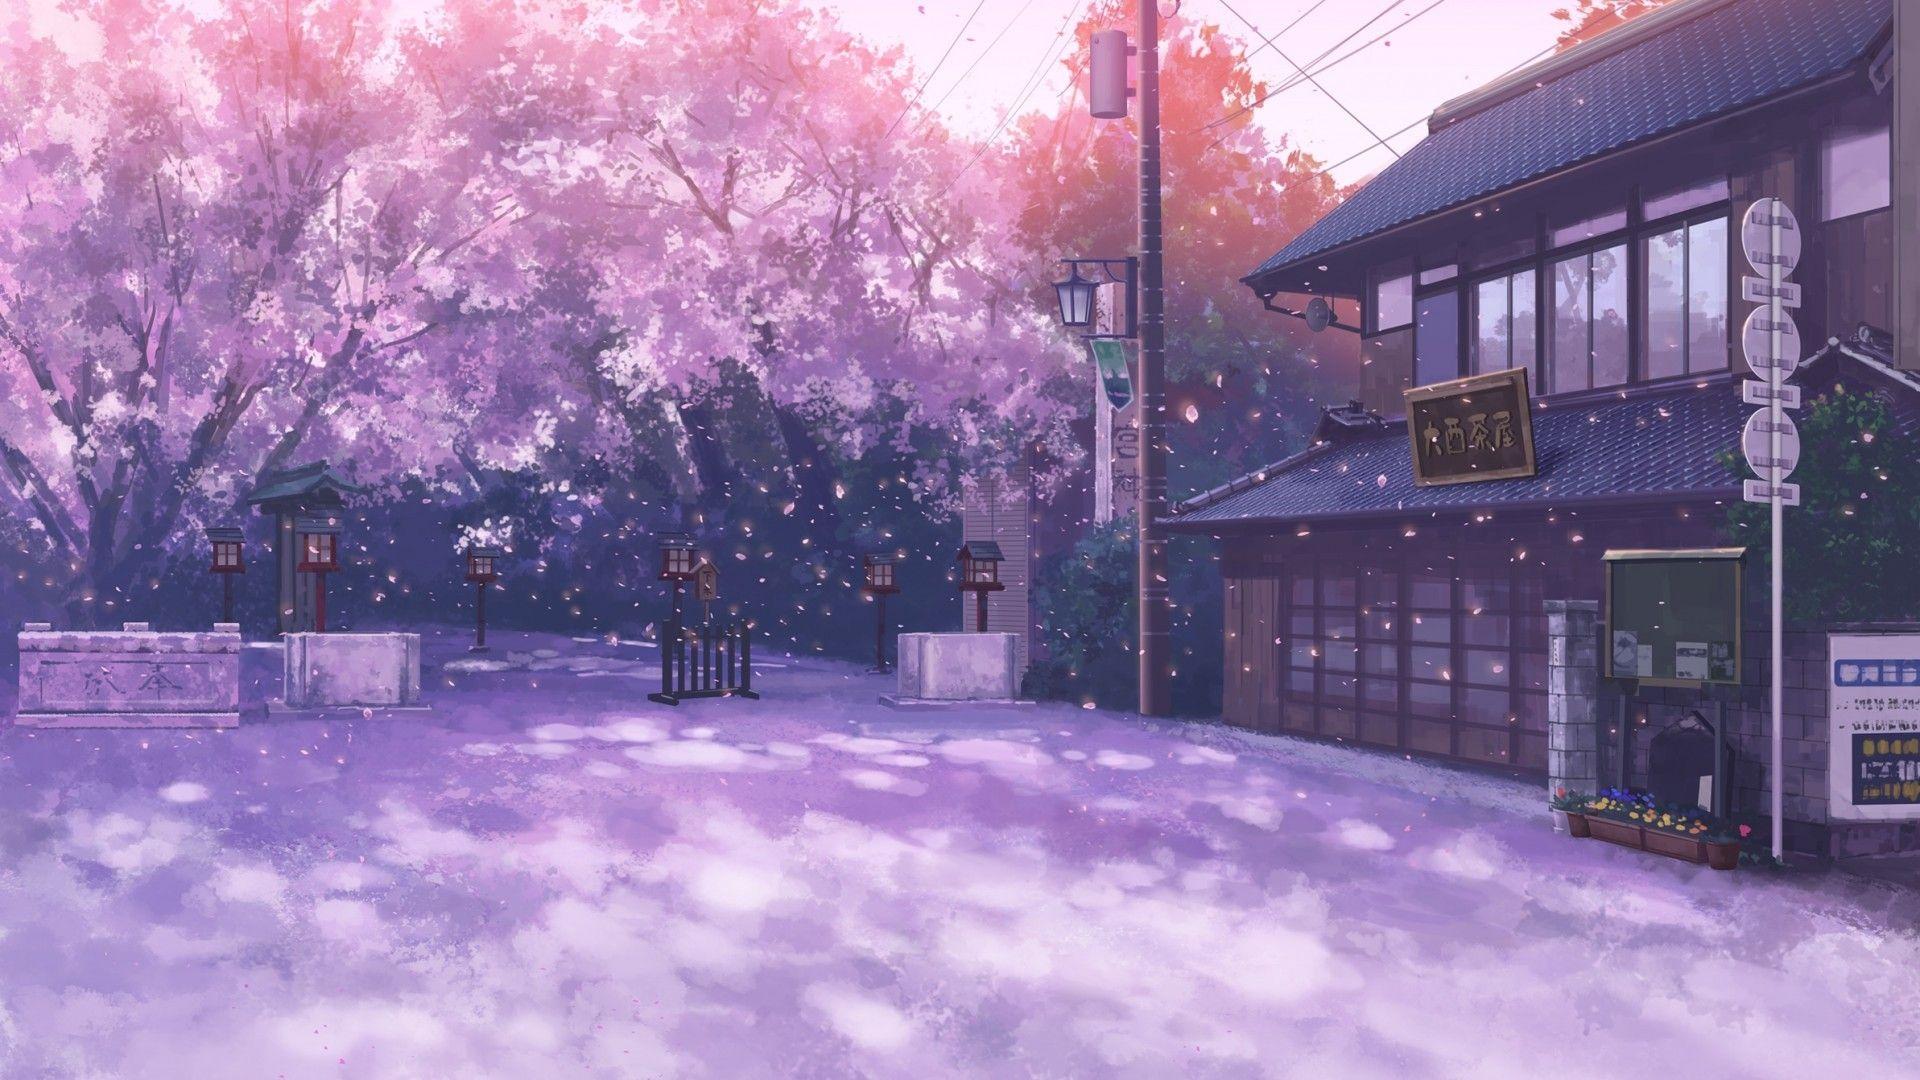 Hãy chiêm ngưỡng hình nền anime nền tảng hoa Anh Đào đầy sắc màu và tinh tế này, với hình ảnh những bông hoa Anh Đào nở rộ trong không gian phủ đầy những cánh hoa tuyệt đẹp.